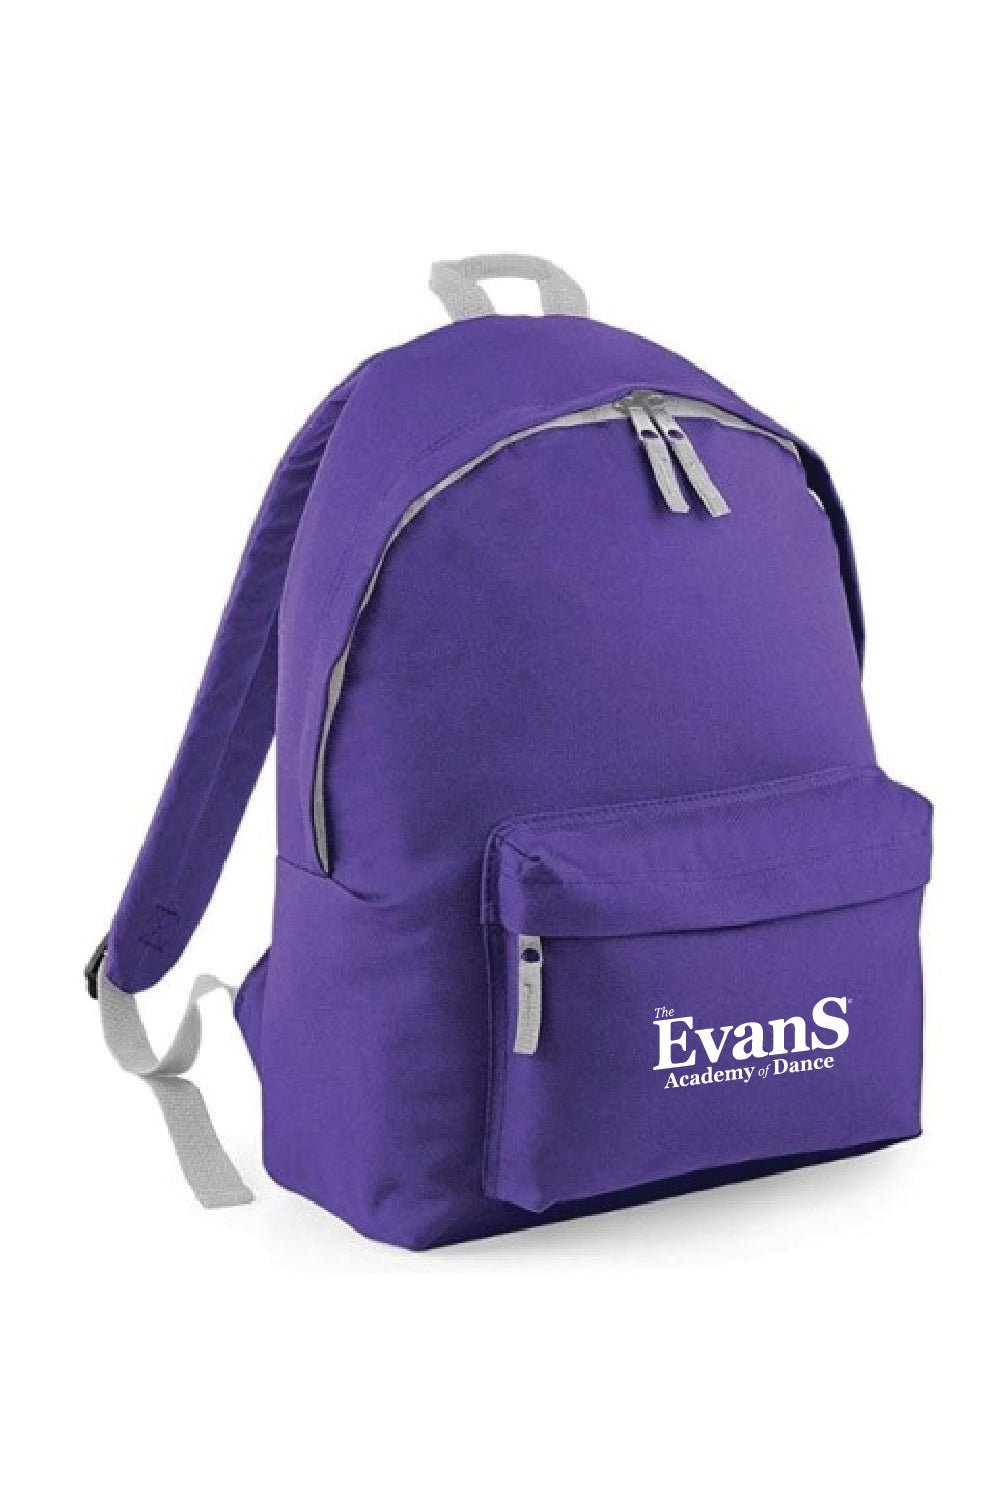 Evans Rucksack Personalised - Uniformwise Schoolwear